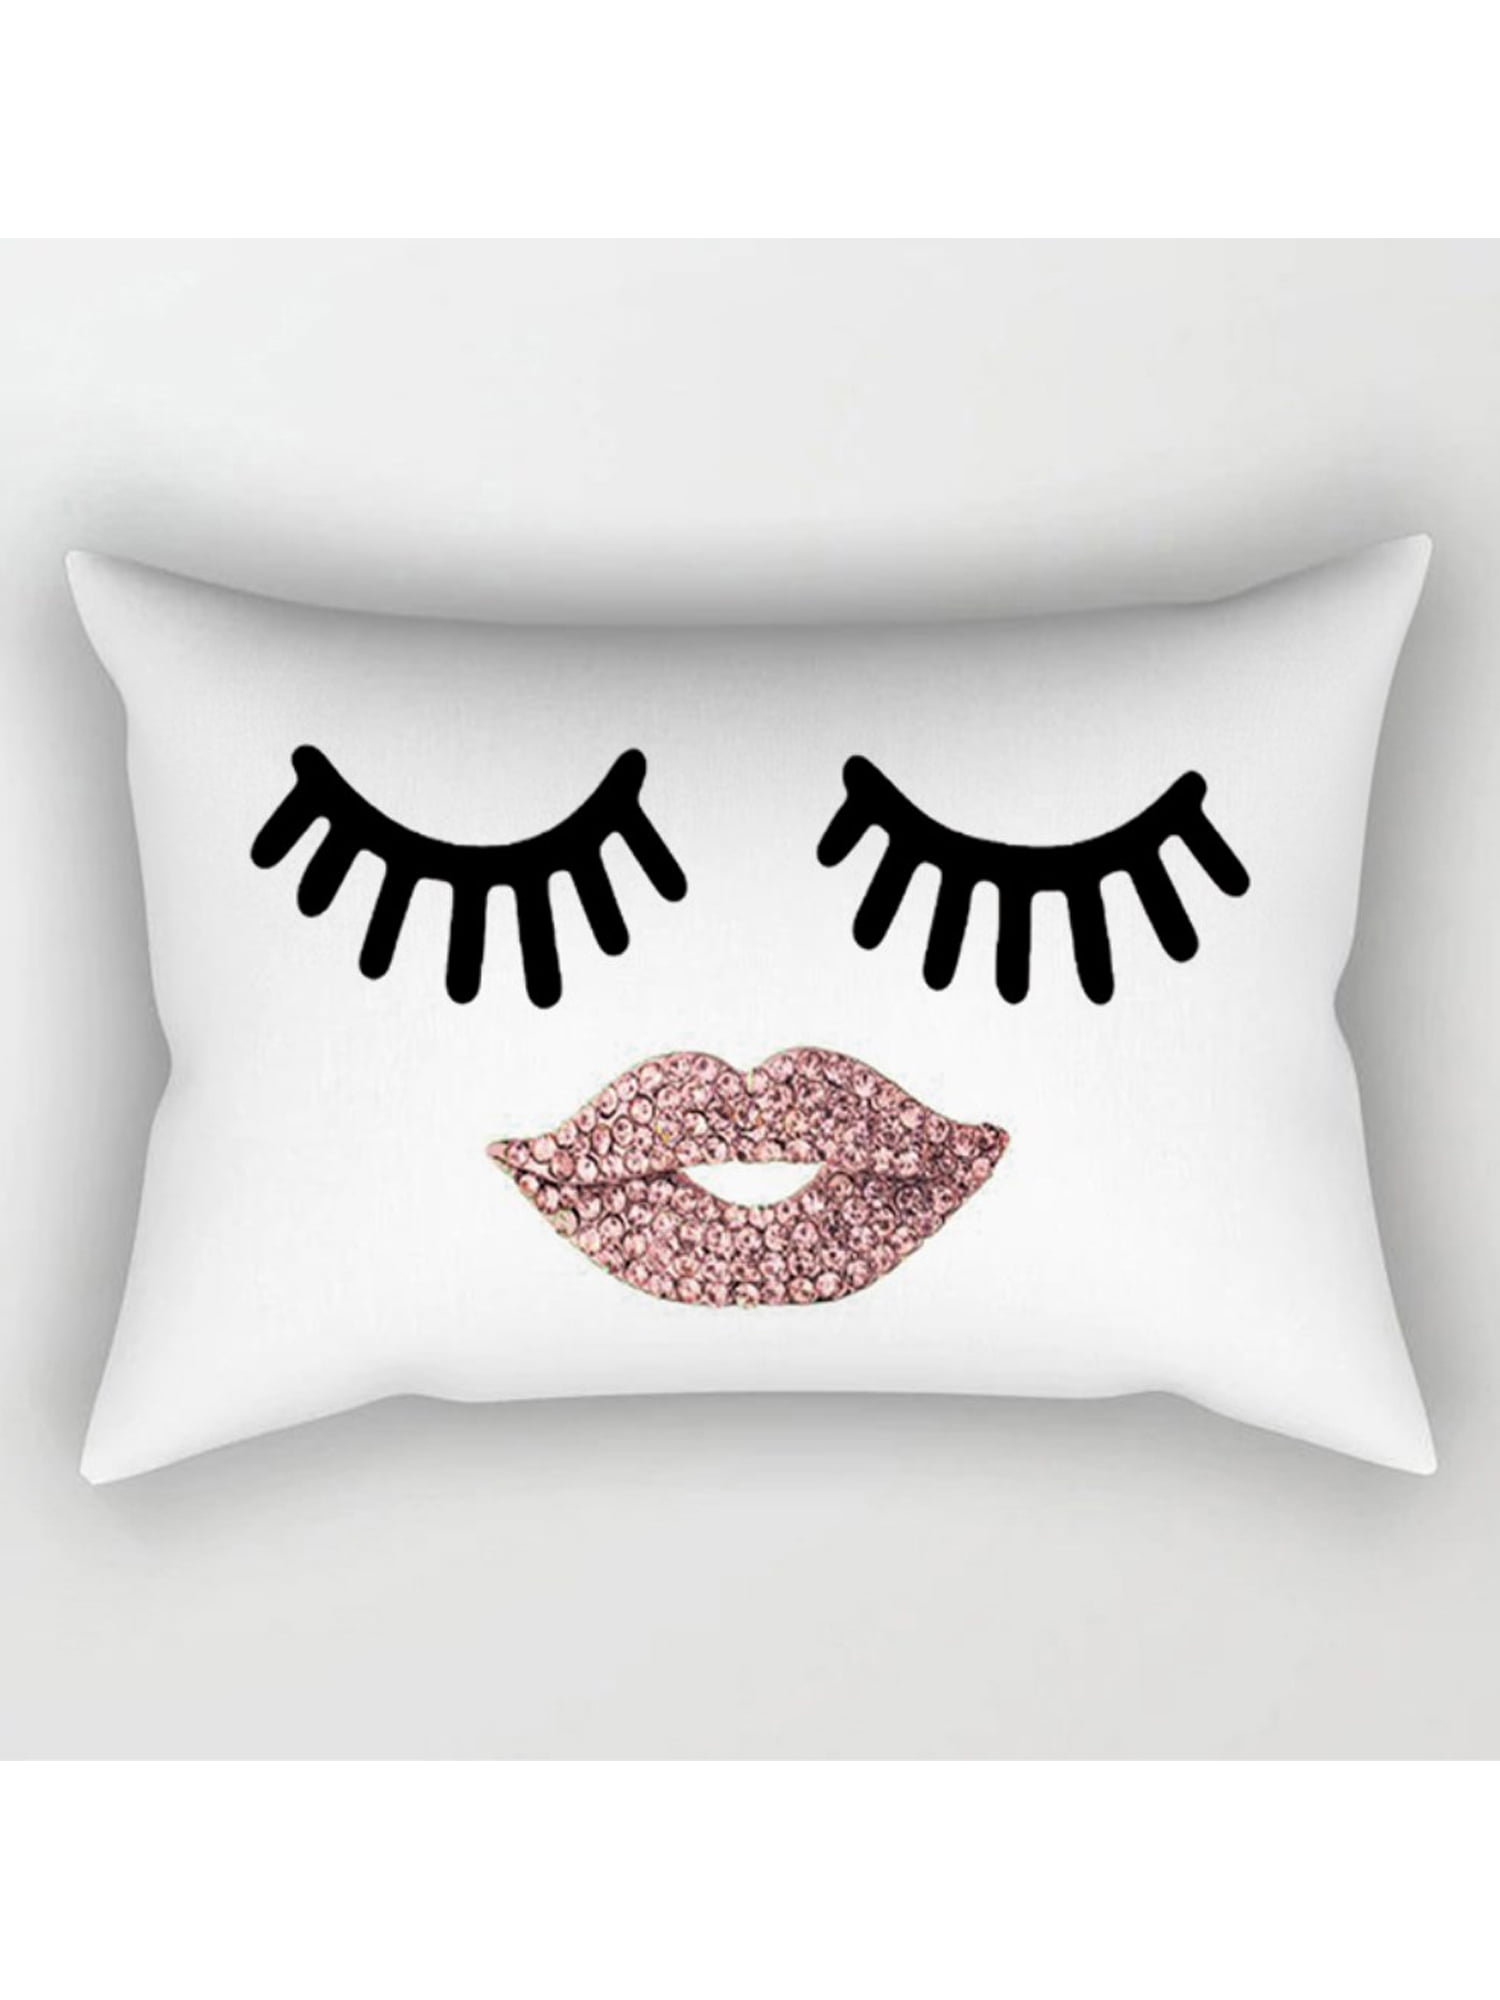 Soft Eye Lips Cotton Linen Pillow Case Sofa Throw Cushion Cover Home Decor 